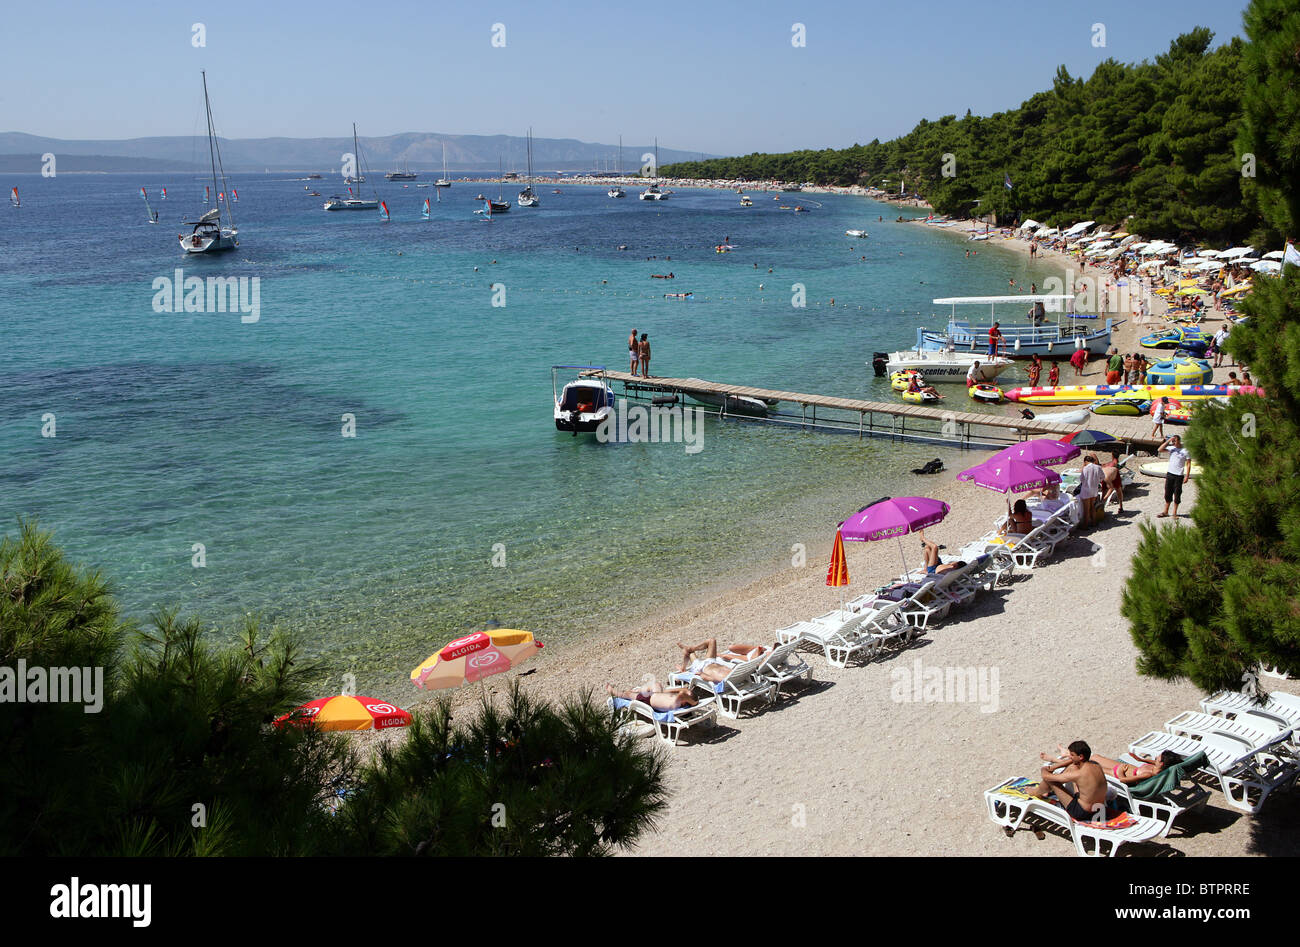 Les gens jouent sur la plage de Bol, sur l'île de Brac, Croatie Banque D'Images